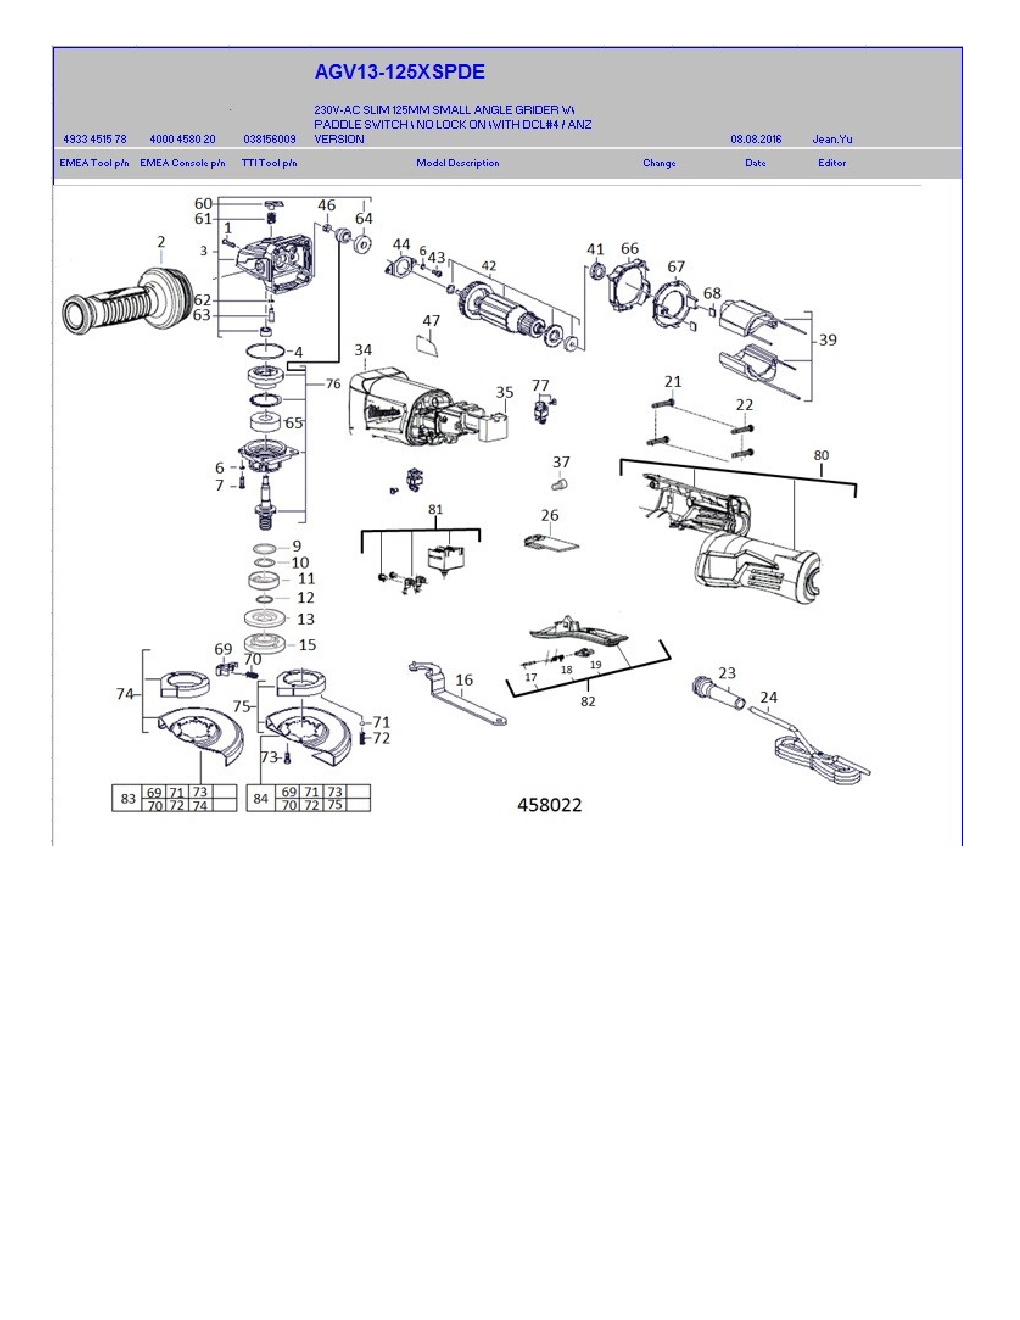 Milwaukee AGV13-125XSPDE Diagram 1